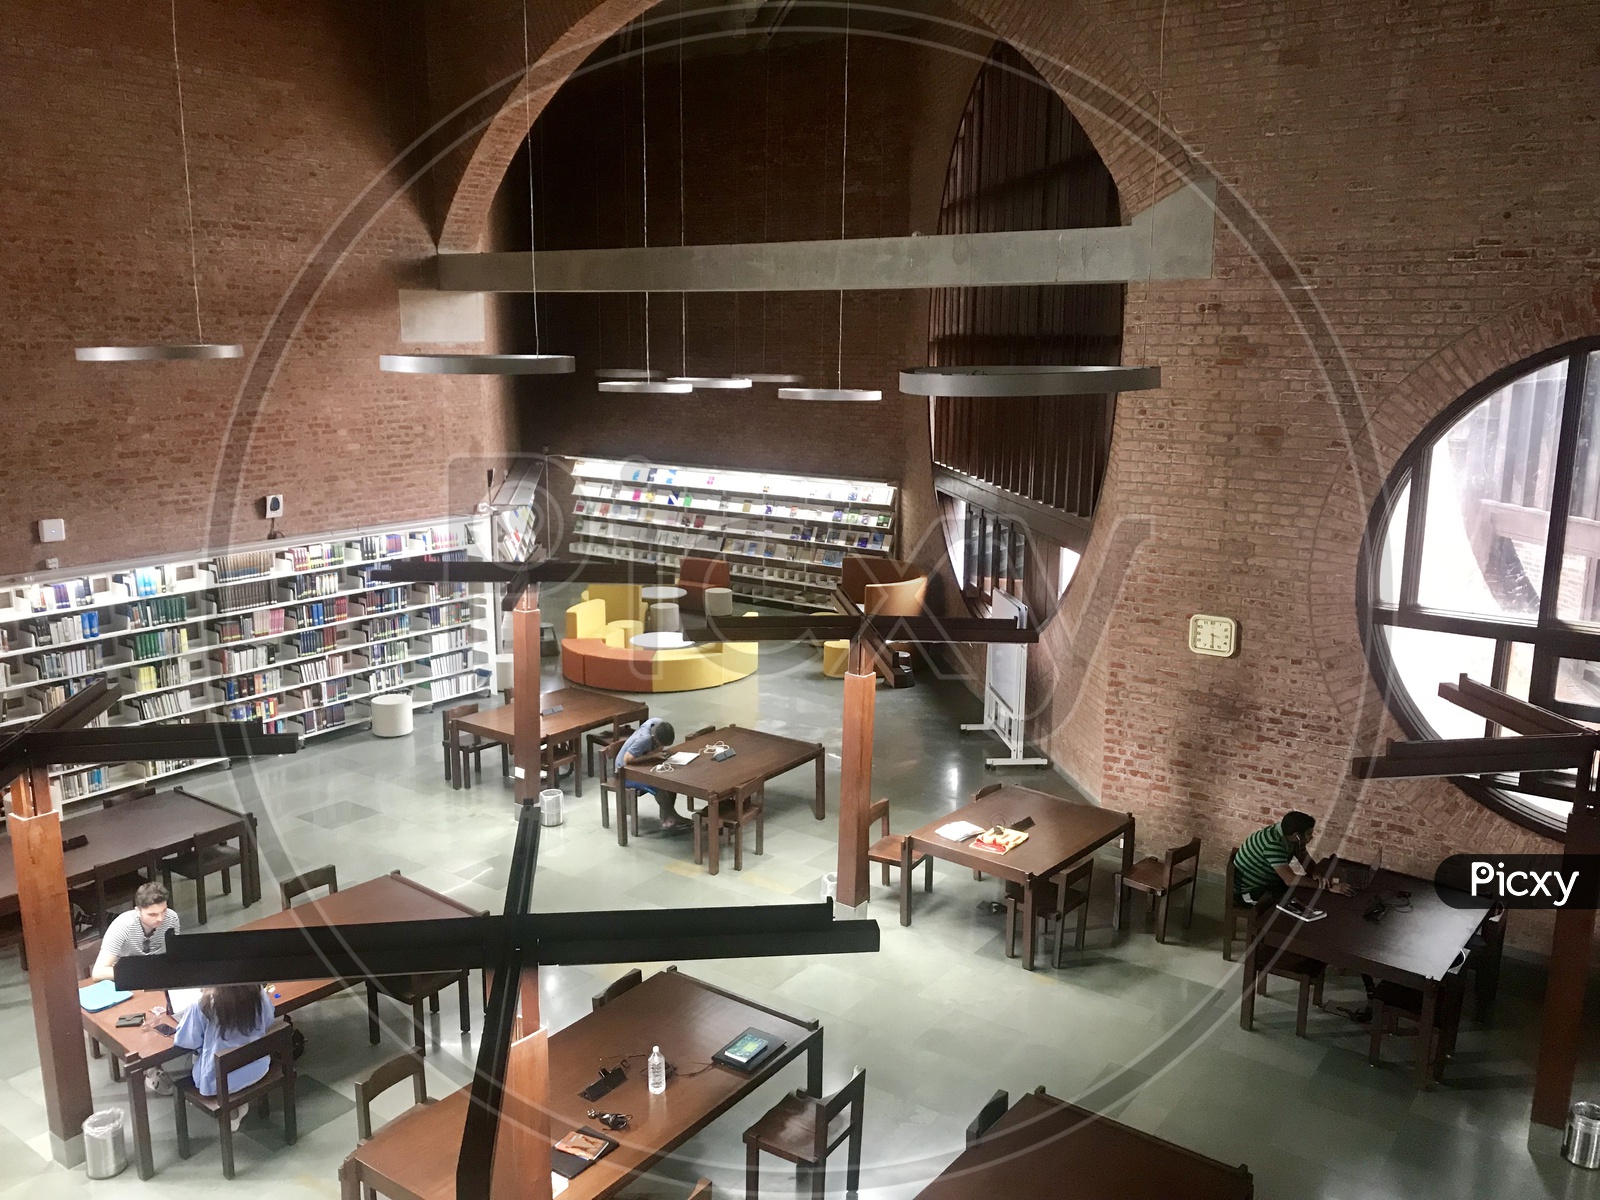 IIM A Library